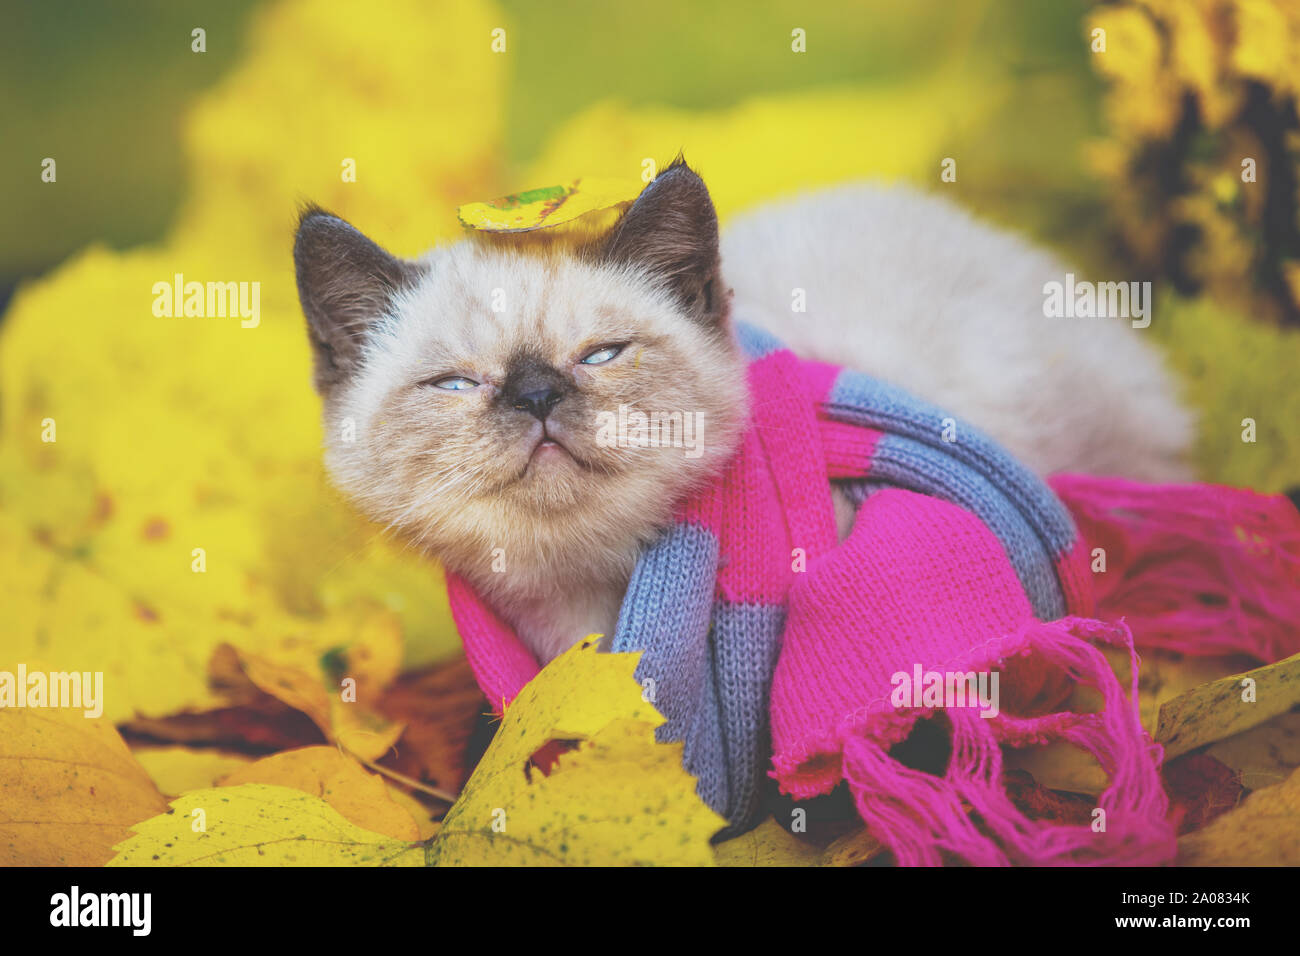 Autunno ritratto di un piccolo gattino che indossa un rosa grigio maglia sciarpa. Cat passeggiate all'aperto sulle foglie cadute in un giardino Foto Stock